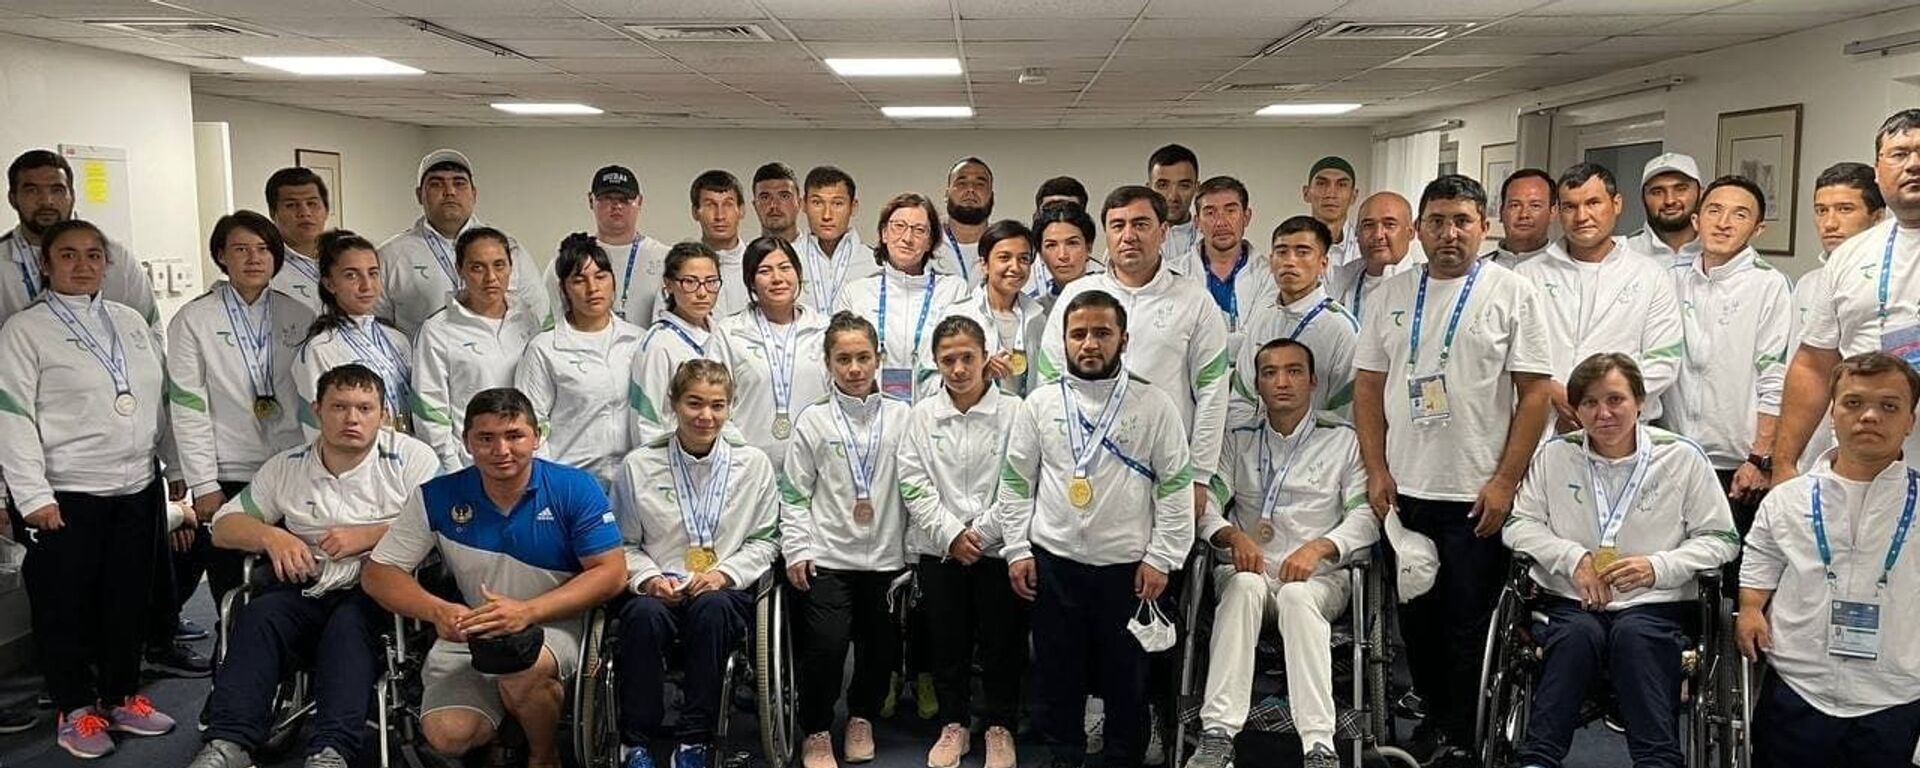 Gran-Pri v Dubae: delegatsiya Uzbekistana zavershila turnir s 24 medalyami - Sputnik O‘zbekiston, 1920, 15.02.2021